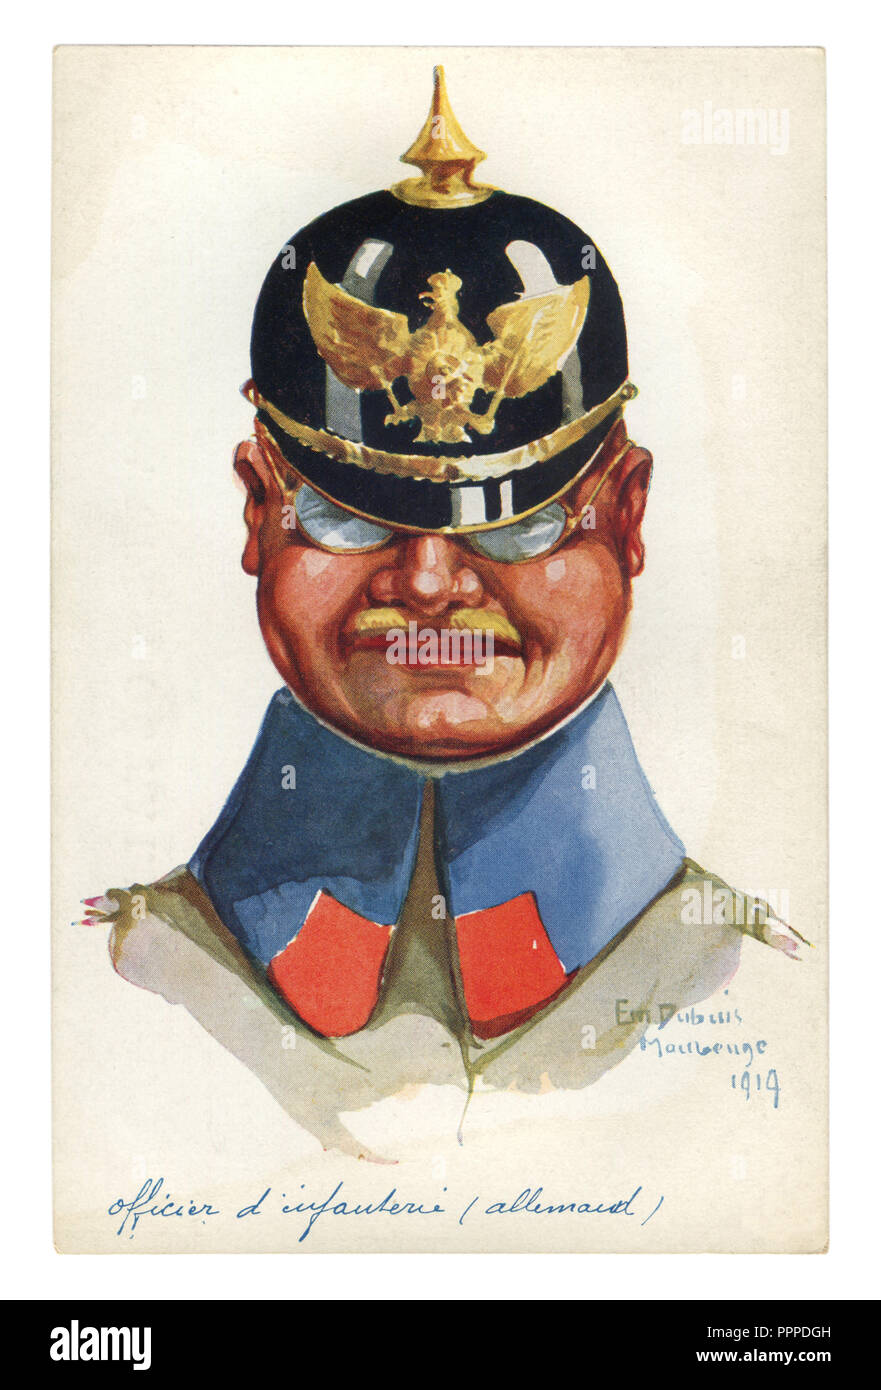 Carte postale historique français : portrait caricature de l'officier allemand corps avec l'aigle pickelhaube emblème. L'Allemagne, la première guerre mondiale 1914-1918 Banque D'Images